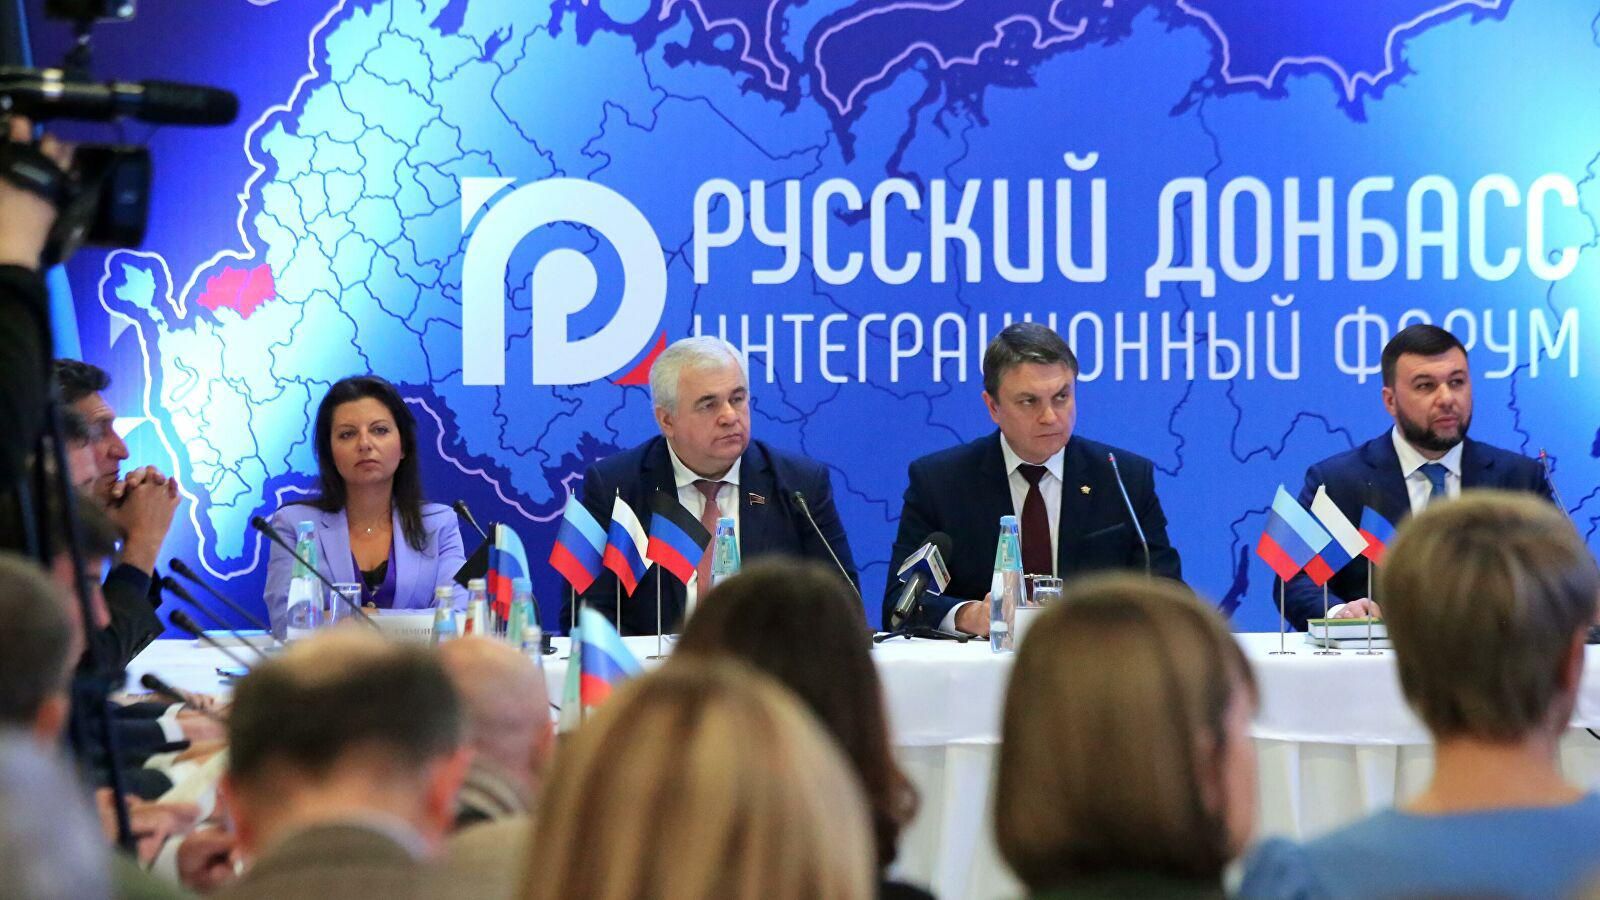 Глава МИД Дмитрий Кулеба отреагировал на форум боевиков в Донецке: детали заявления